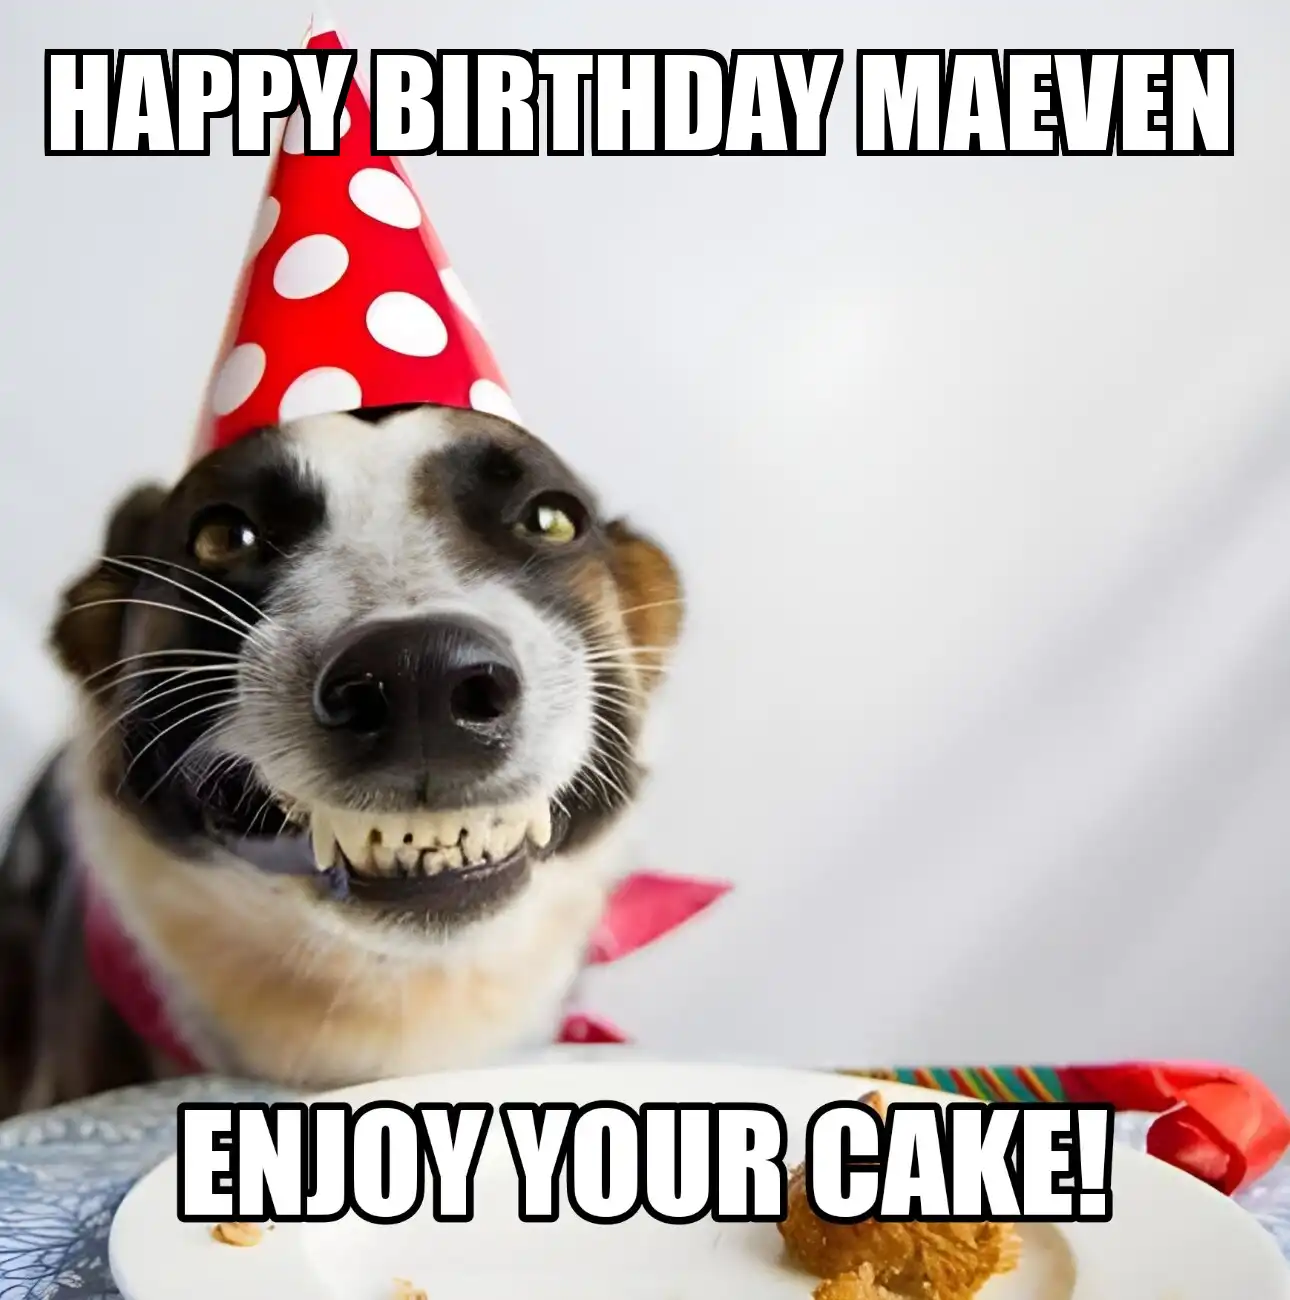 Happy Birthday Maeven Enjoy Your Cake Dog Meme